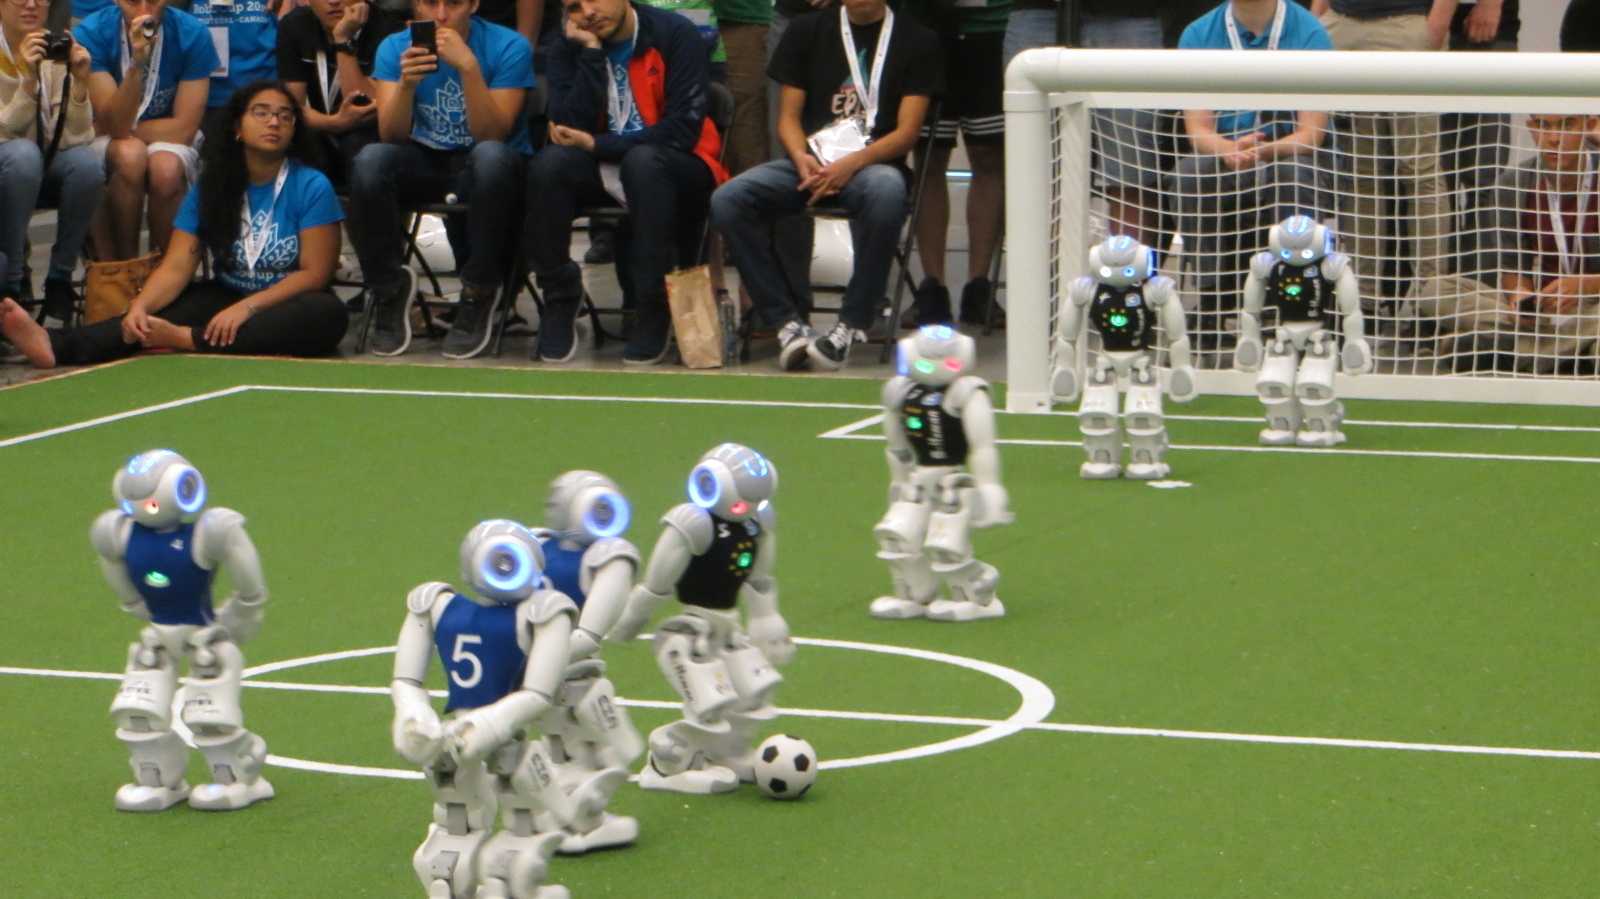 RoboCup-WM: Deutschland ist Doppel-Weltmeister im Fußball